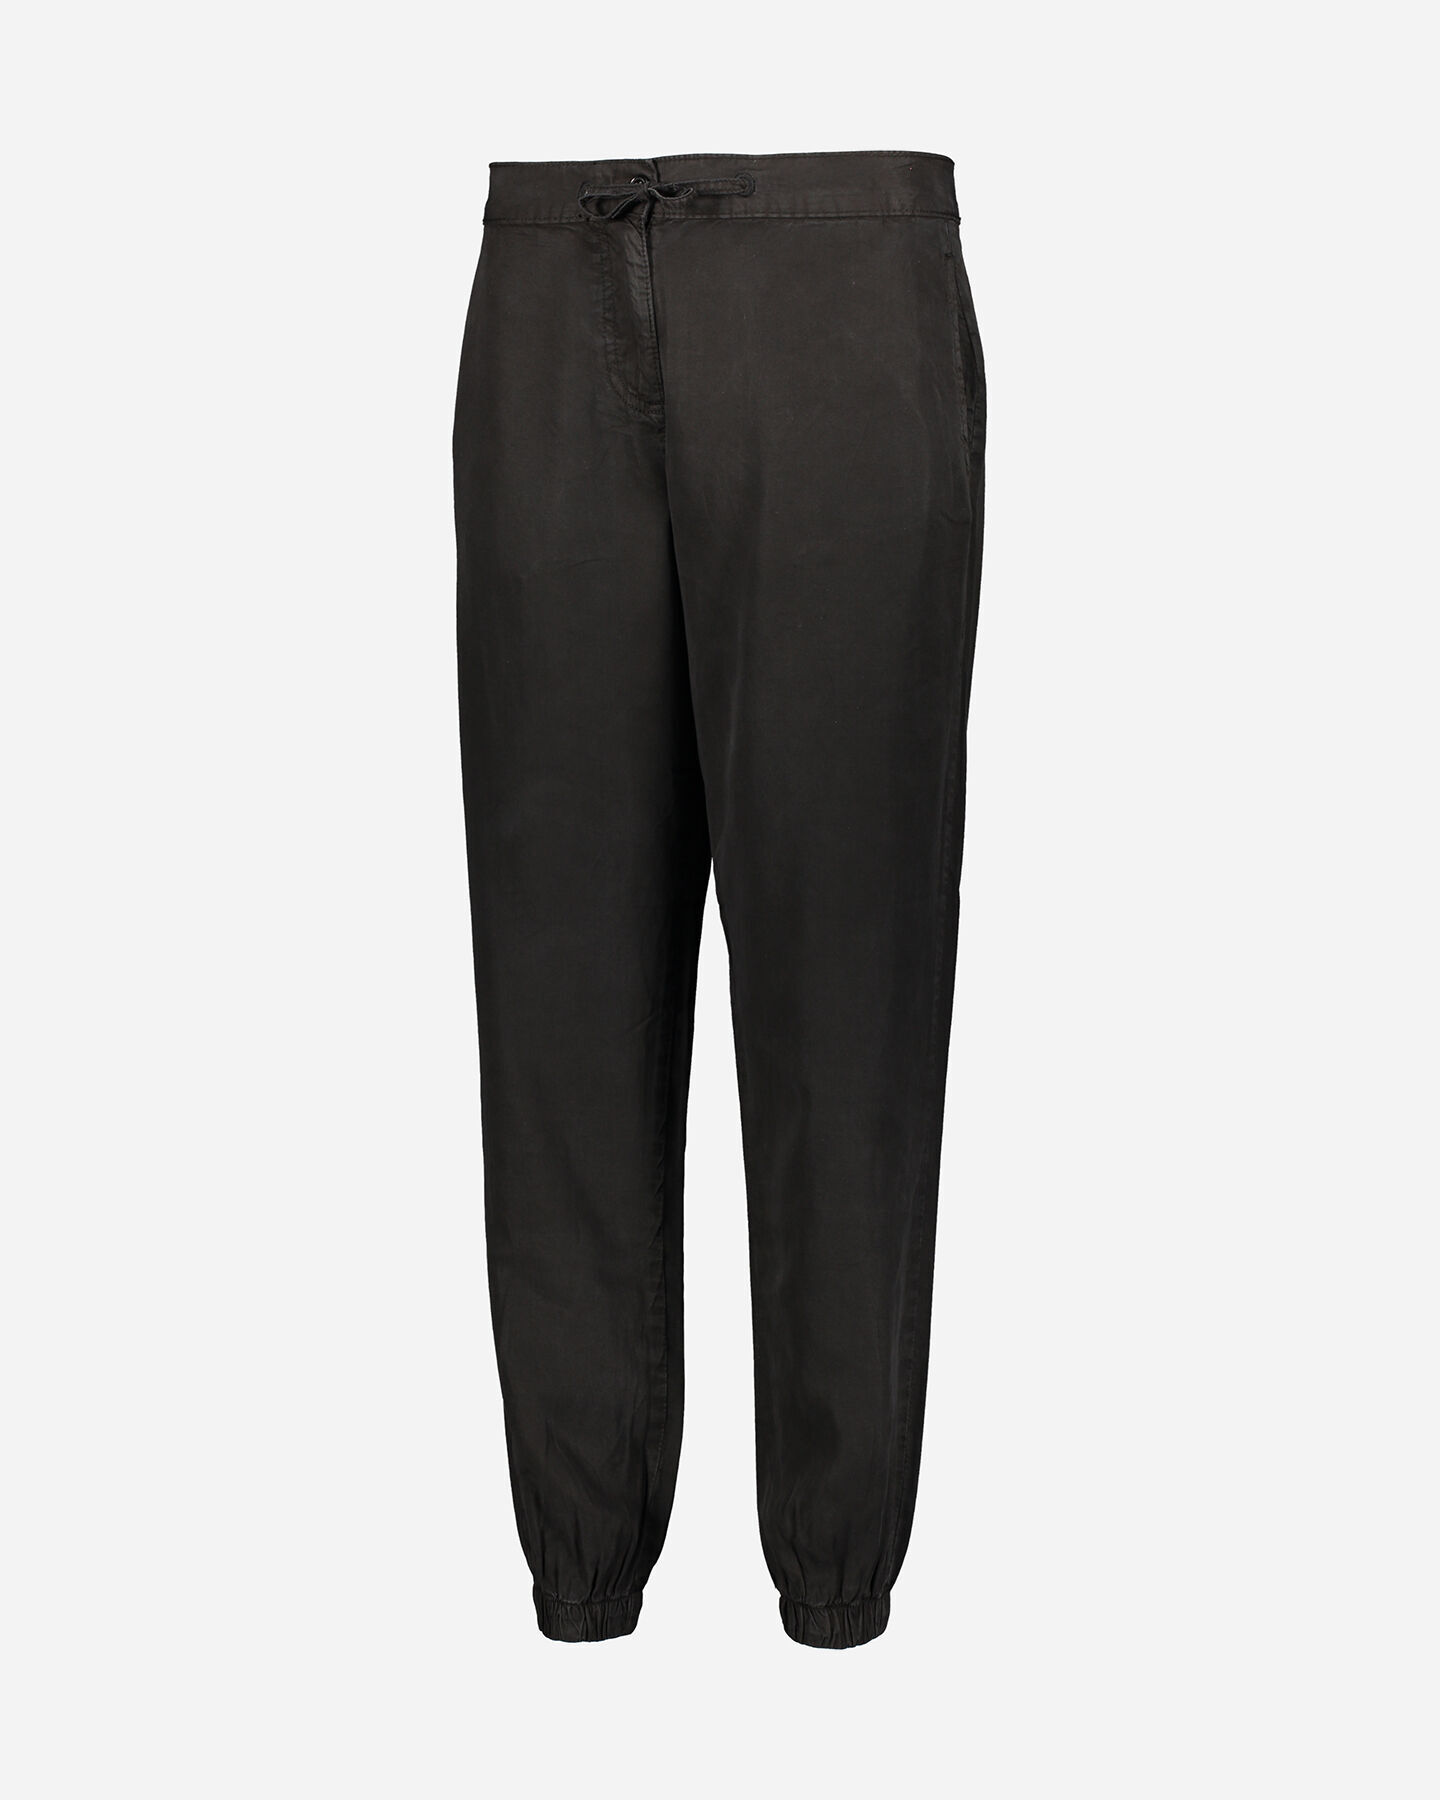  Pantalone DACK'S CUFF TENCEL W S4086726|050|S scatto 4